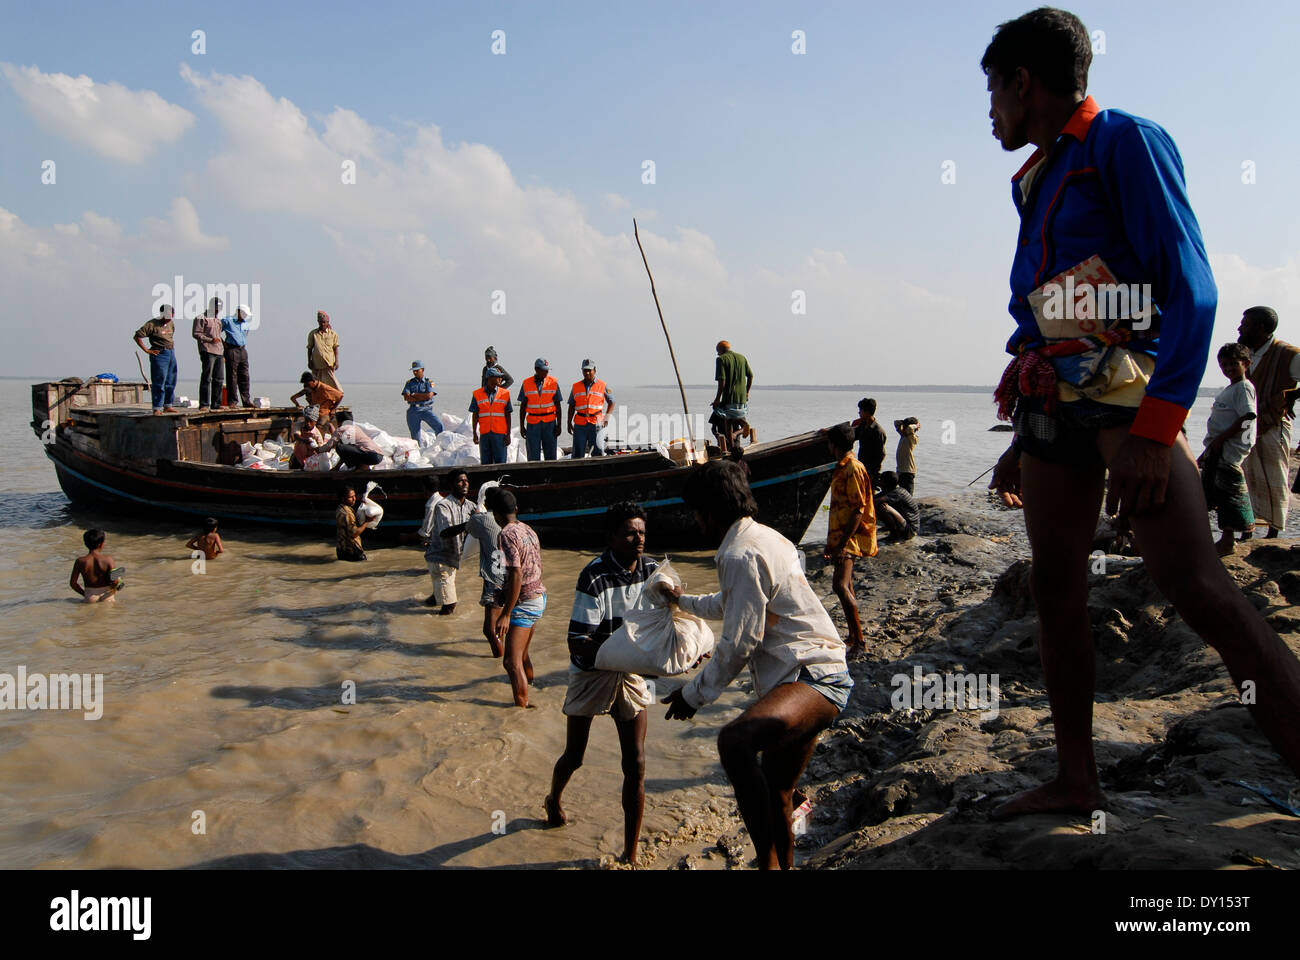 Bangladesch Distrikt Bagerhat, Zyklon Sidr und Flut Dörfer im Süden khali zerstören, Fluss Balaswar, die Verteilung der Hilfsgüter an die betroffenen Menschen in den Dörfern, Taschen aus Saudi-arabien werden von einem muslimischen NGO verteilt Stockfoto